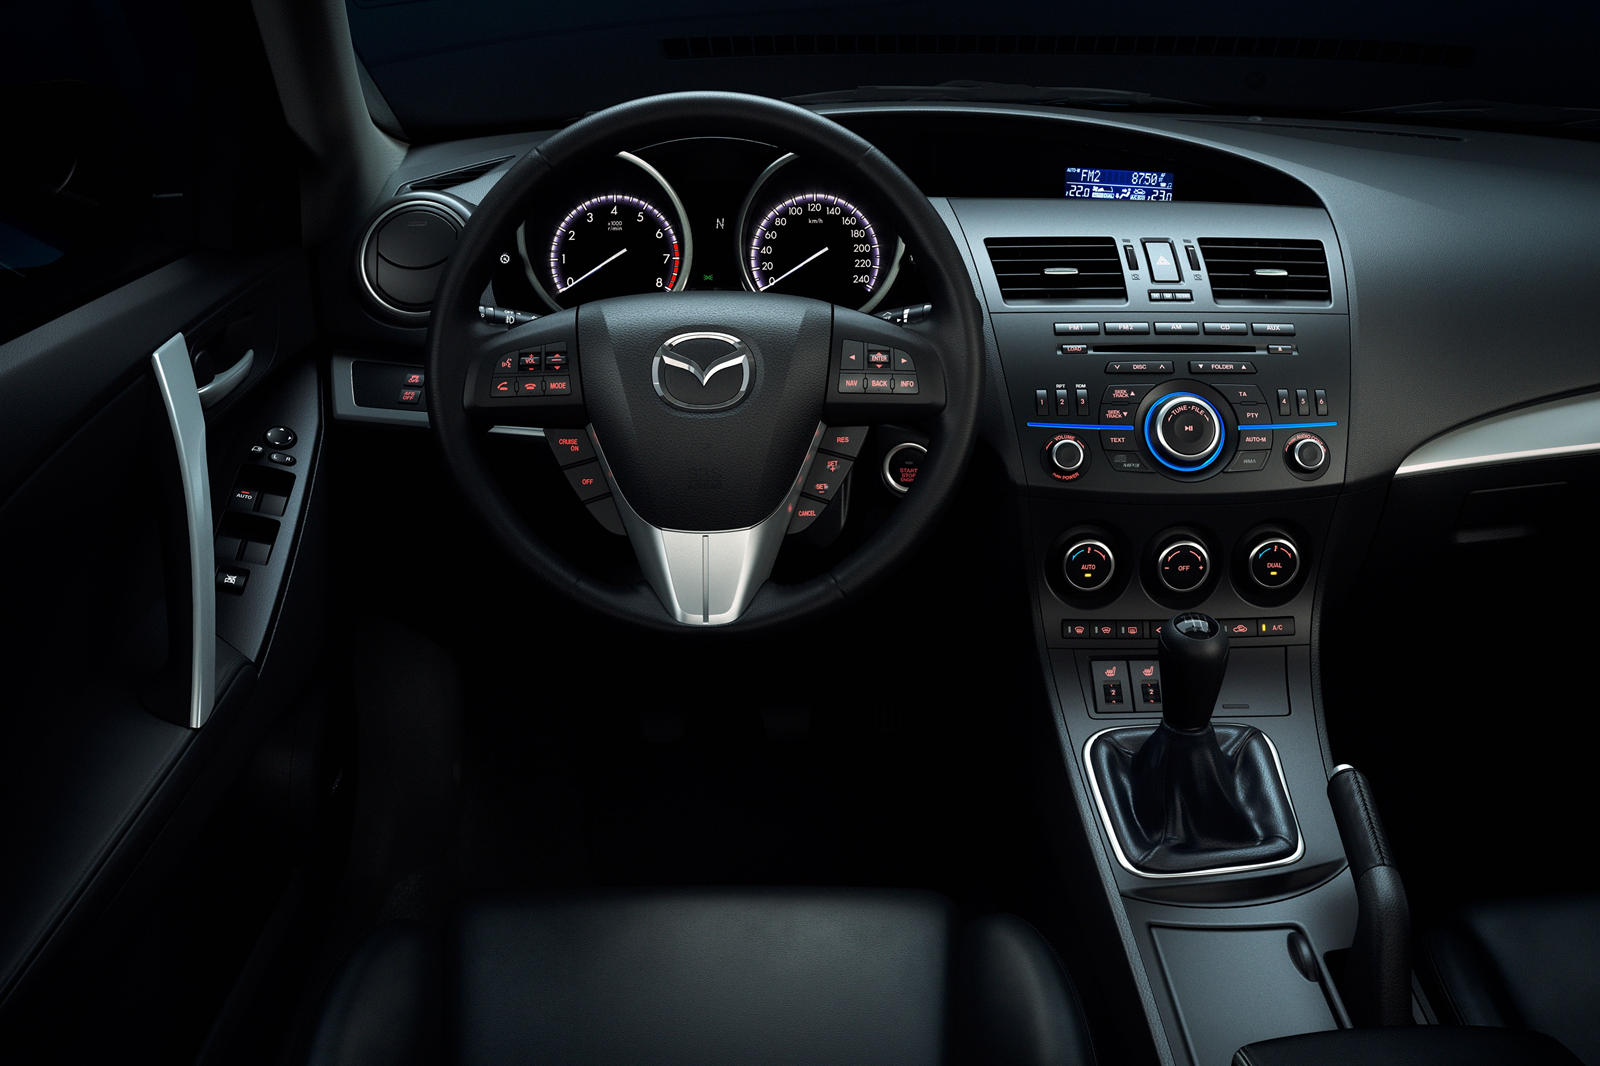 2013 Mazda 3 Hatchback Interior Photos | CarBuzz